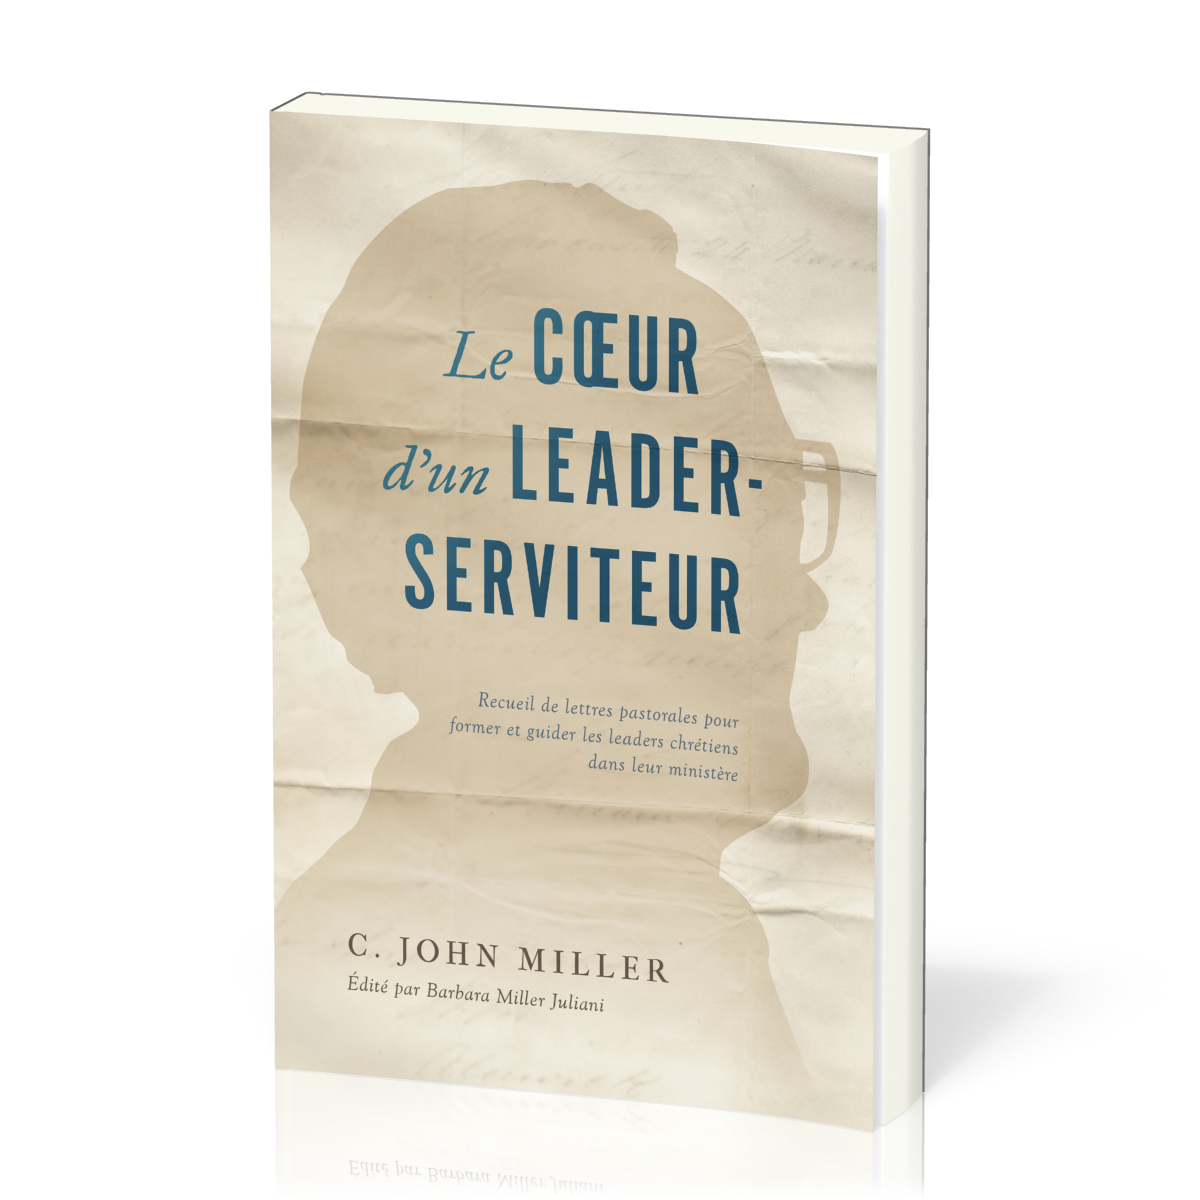 Coeur d'un leader-serviteur (Le) - Recueil de lettres pastorales pour former et guider les leaders